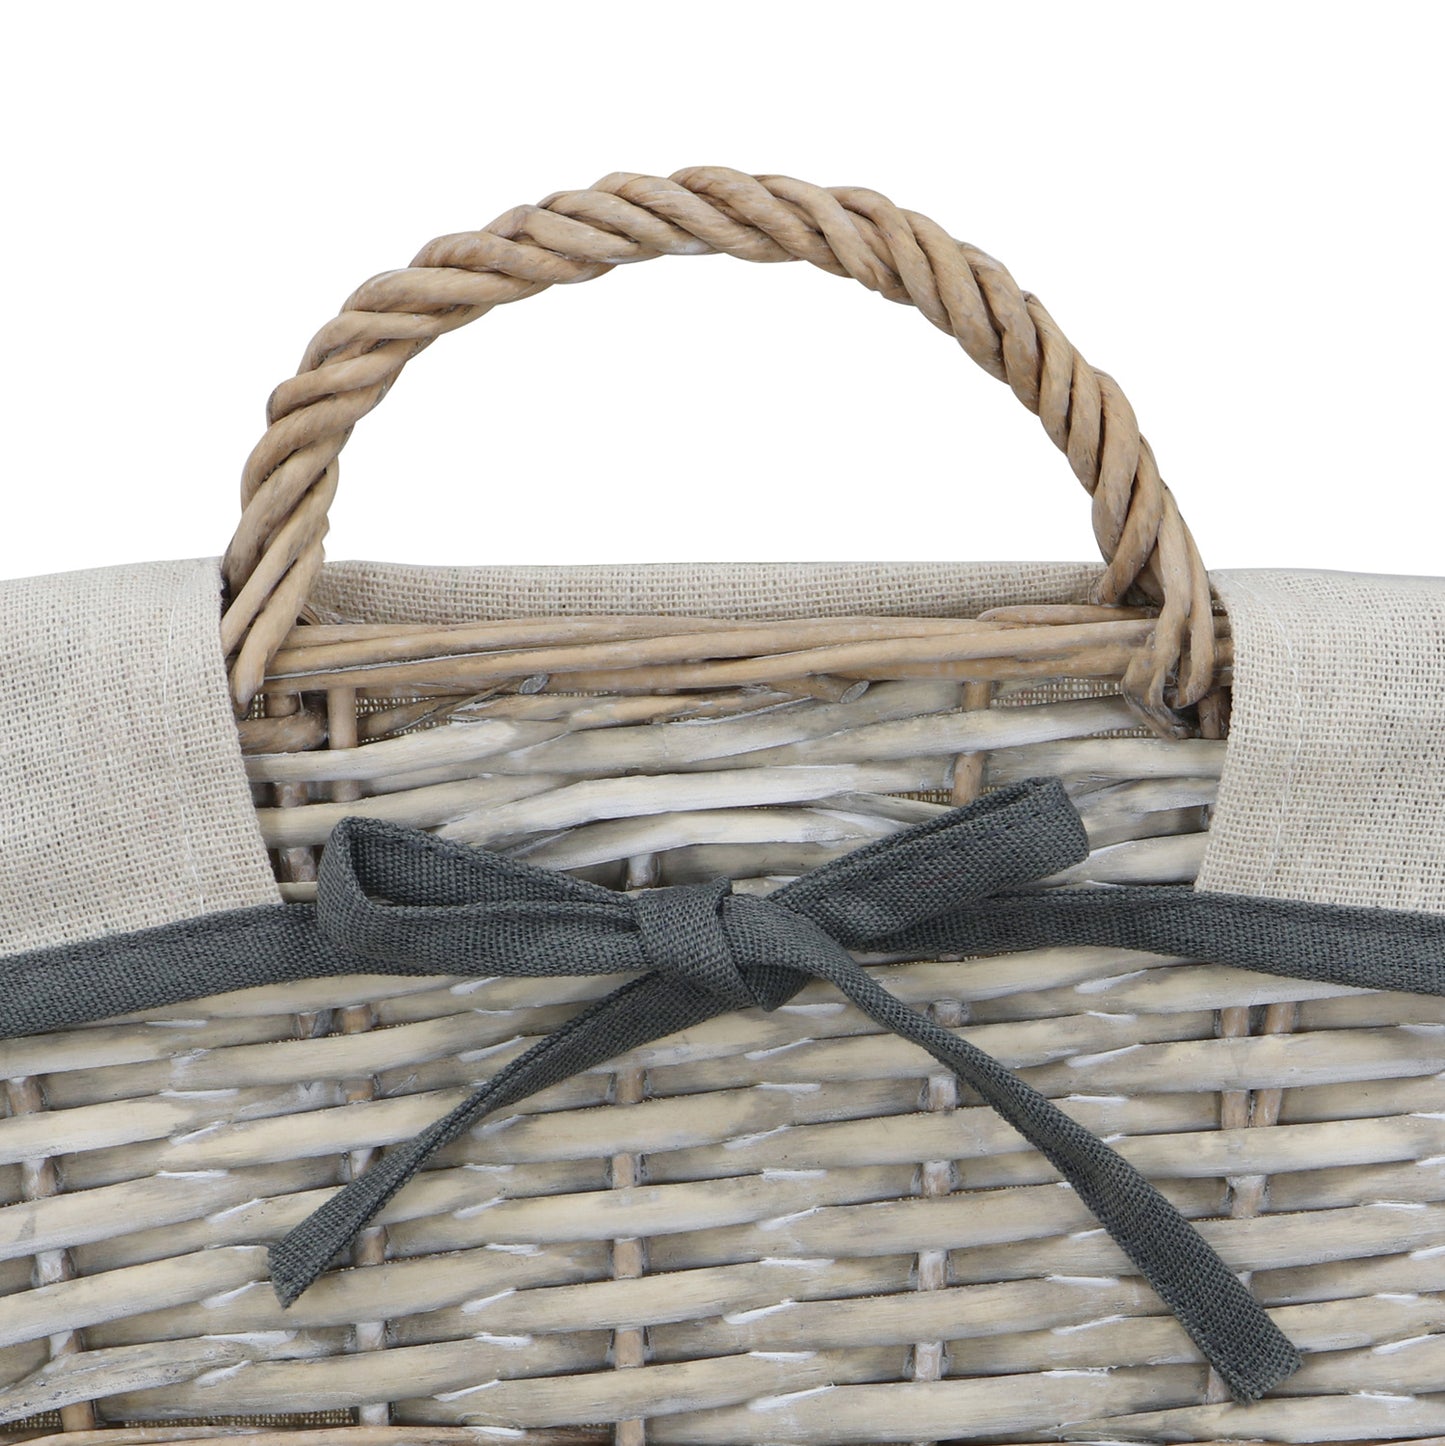 Arianna Antique Wash Rectangular Willow Storage Basket